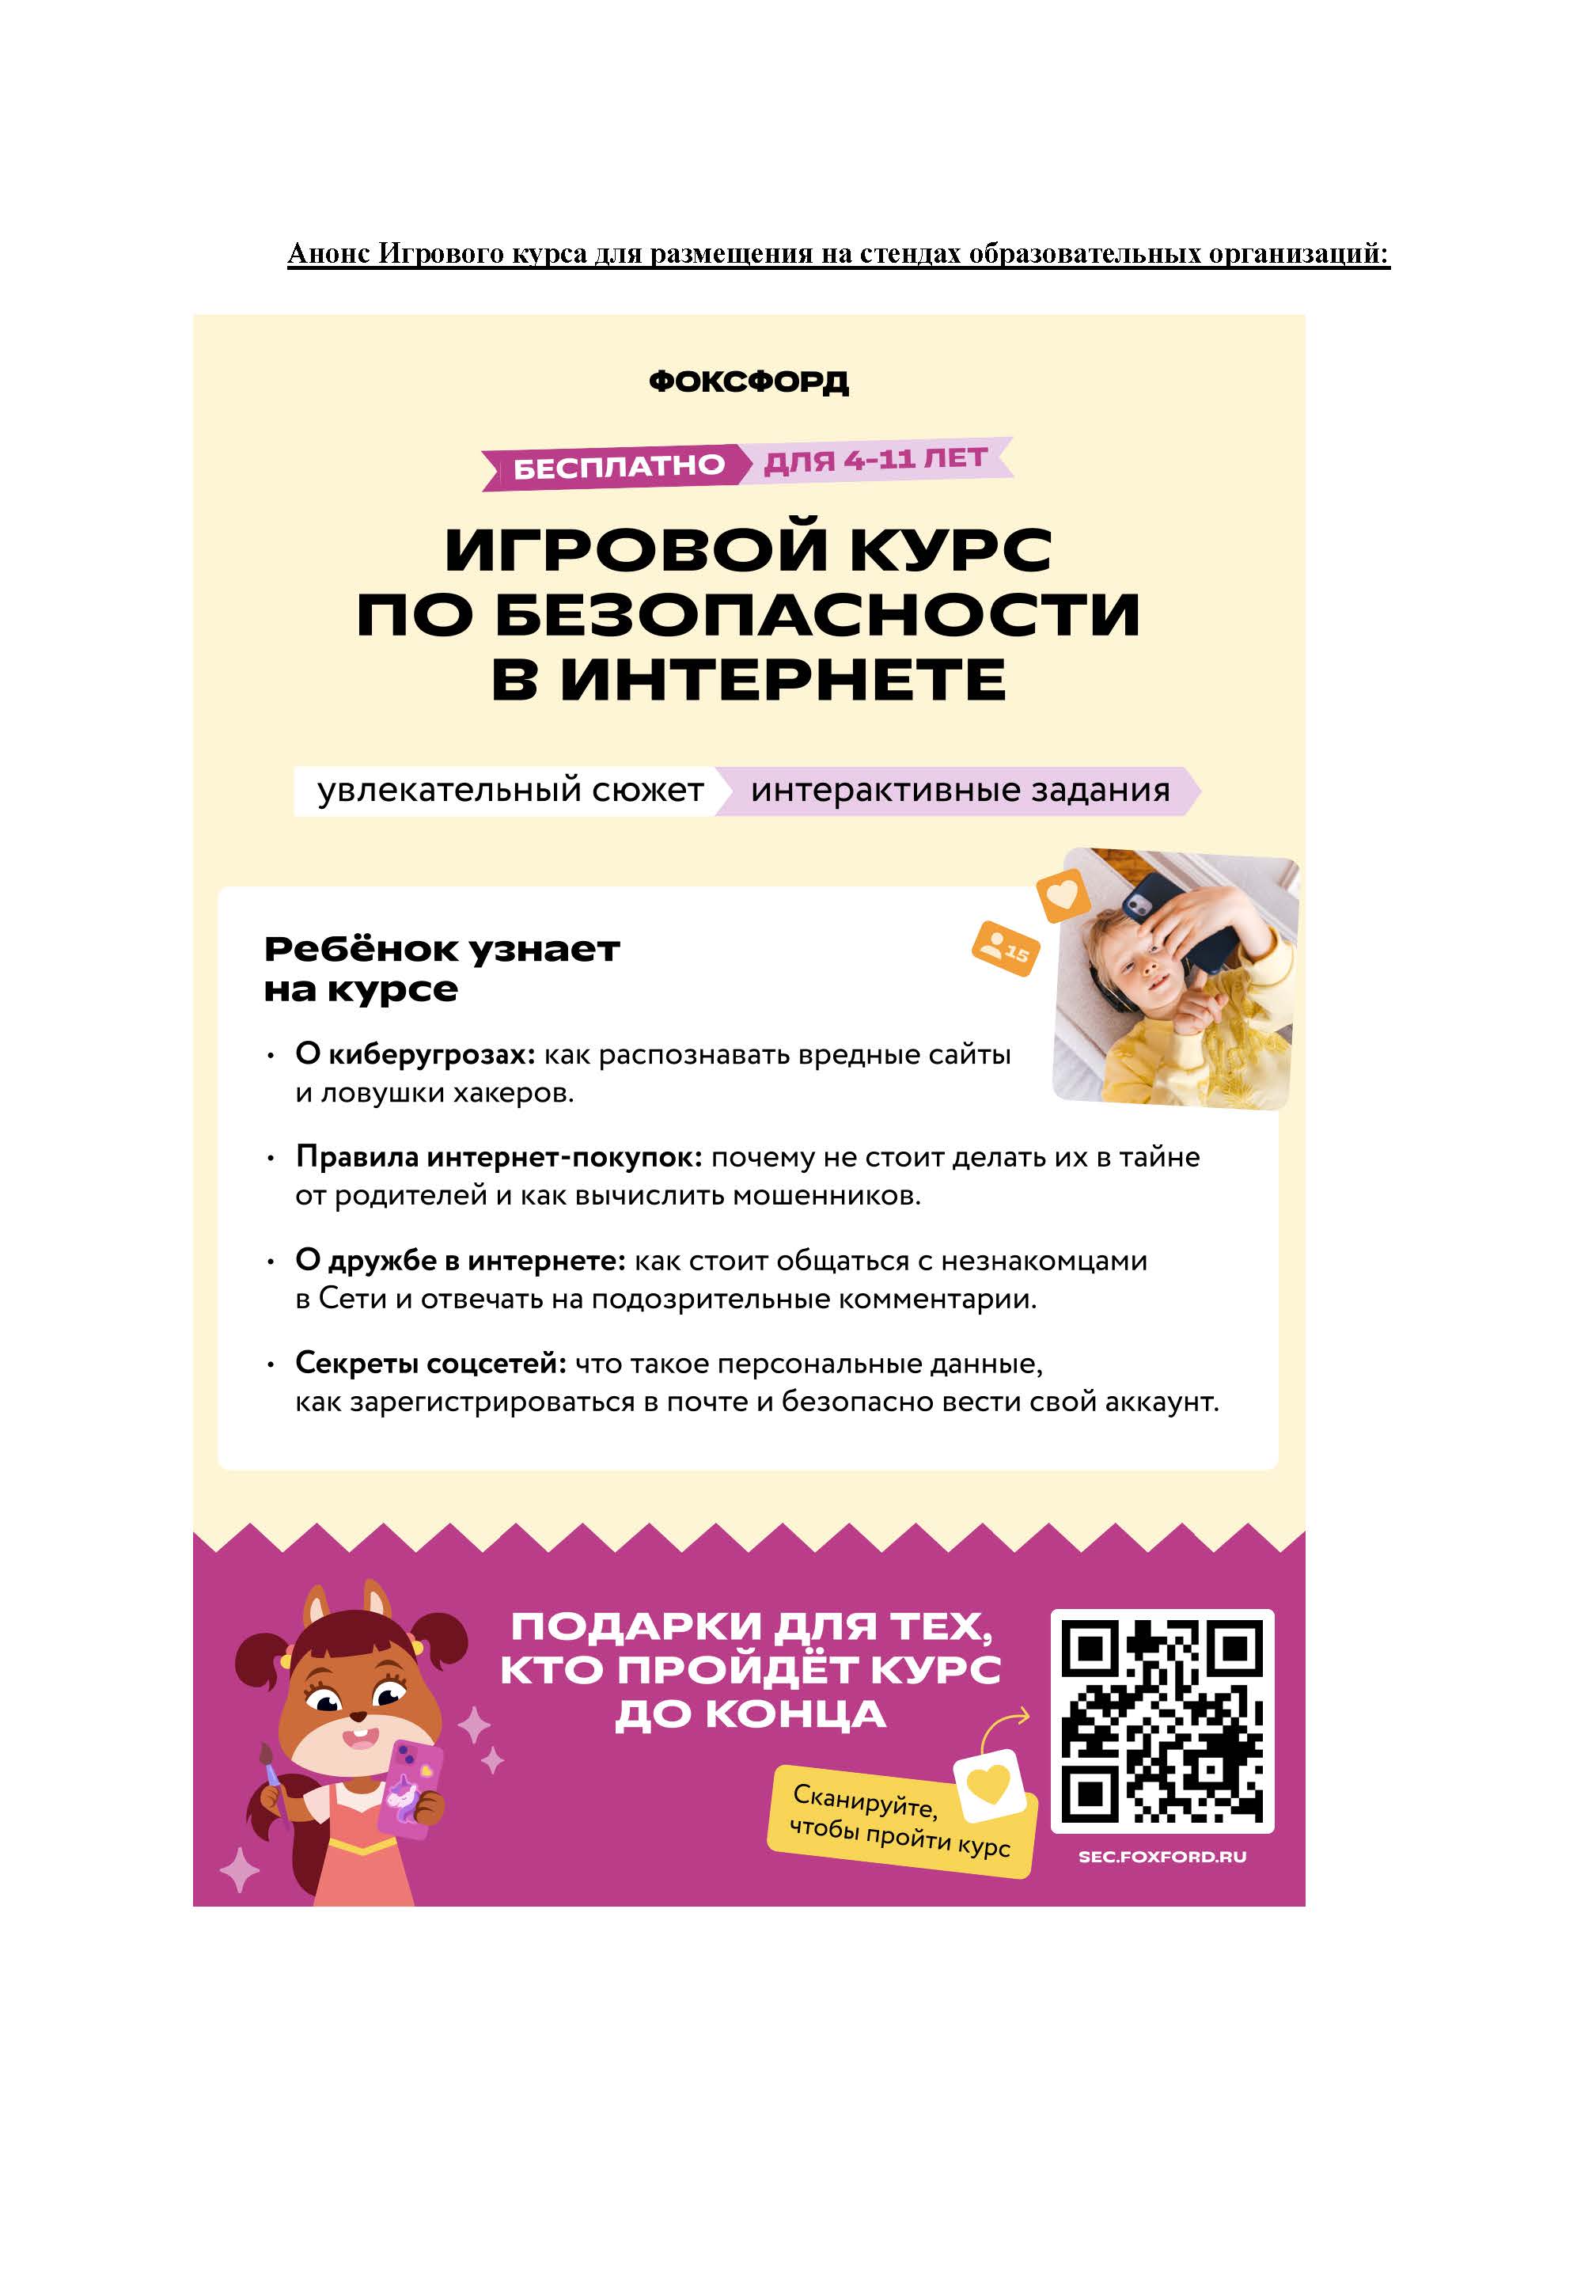 Всероссийский бесплатный игровой курс по безопасности в Интернете.